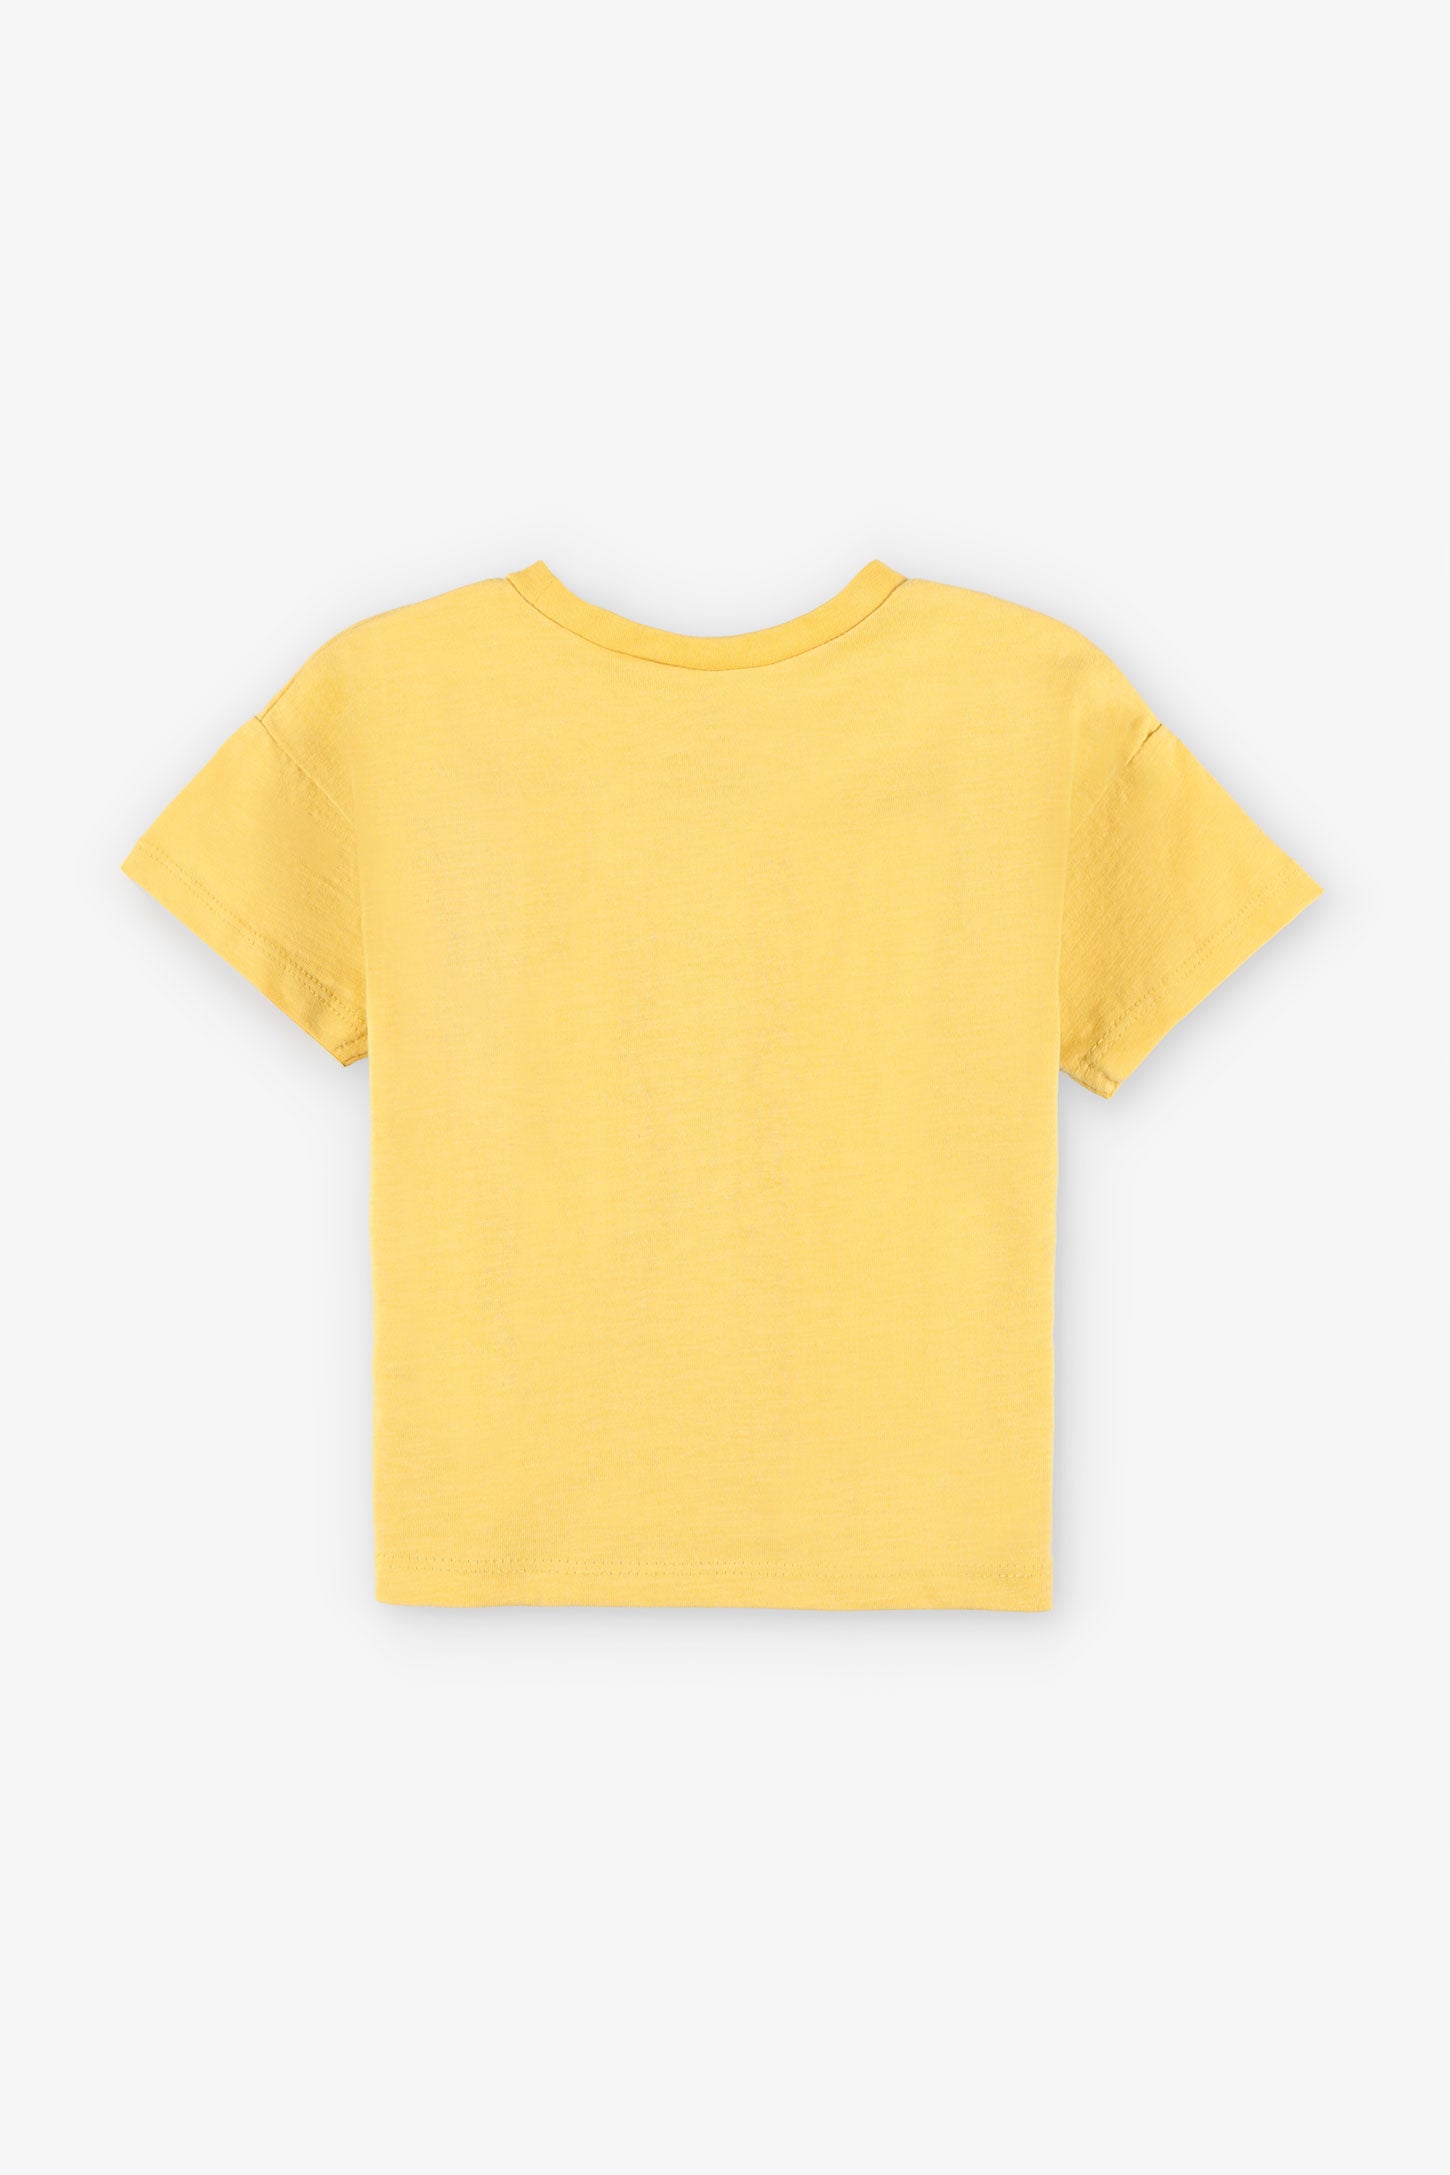 T-shirt coupe ample en coton, 2/15$ - Bébé garçon && JAUNE